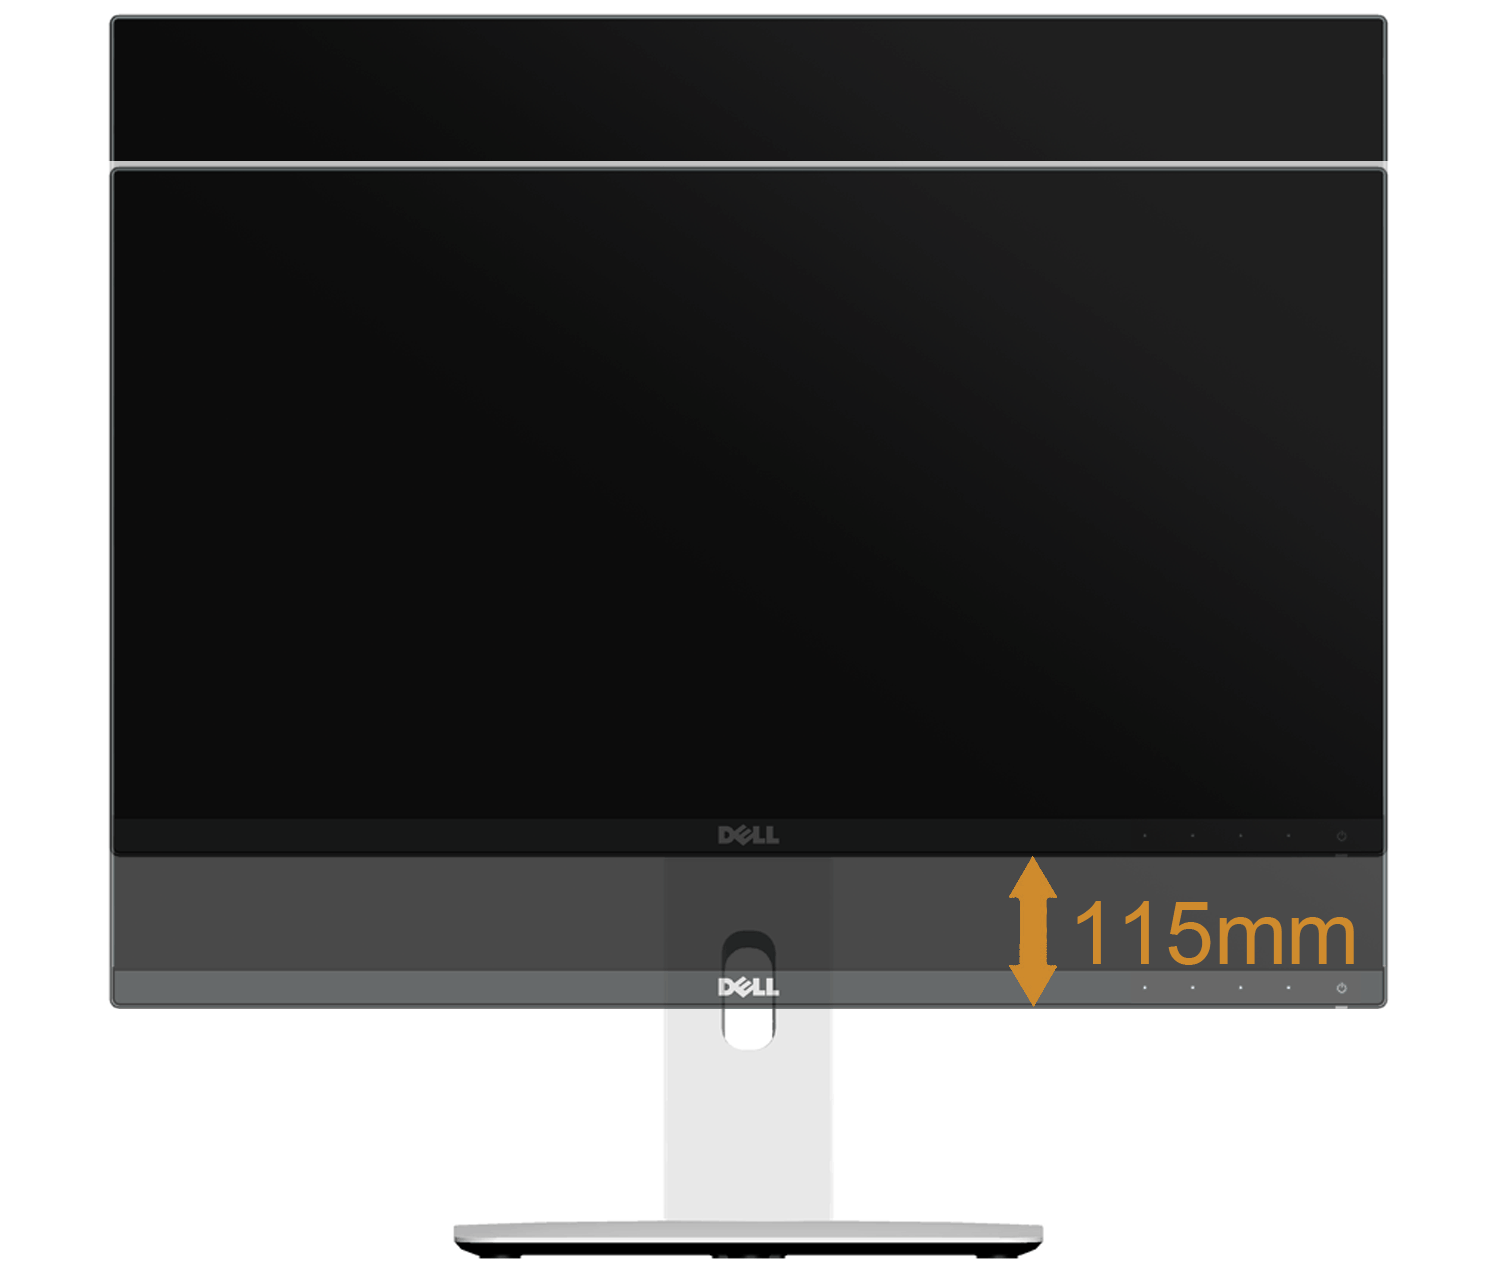 Naklonění Podstavec upevněný k monitoru umožňuje naklonit monitor pro dosažení nejpohodlnějšího úhlu pohledu.